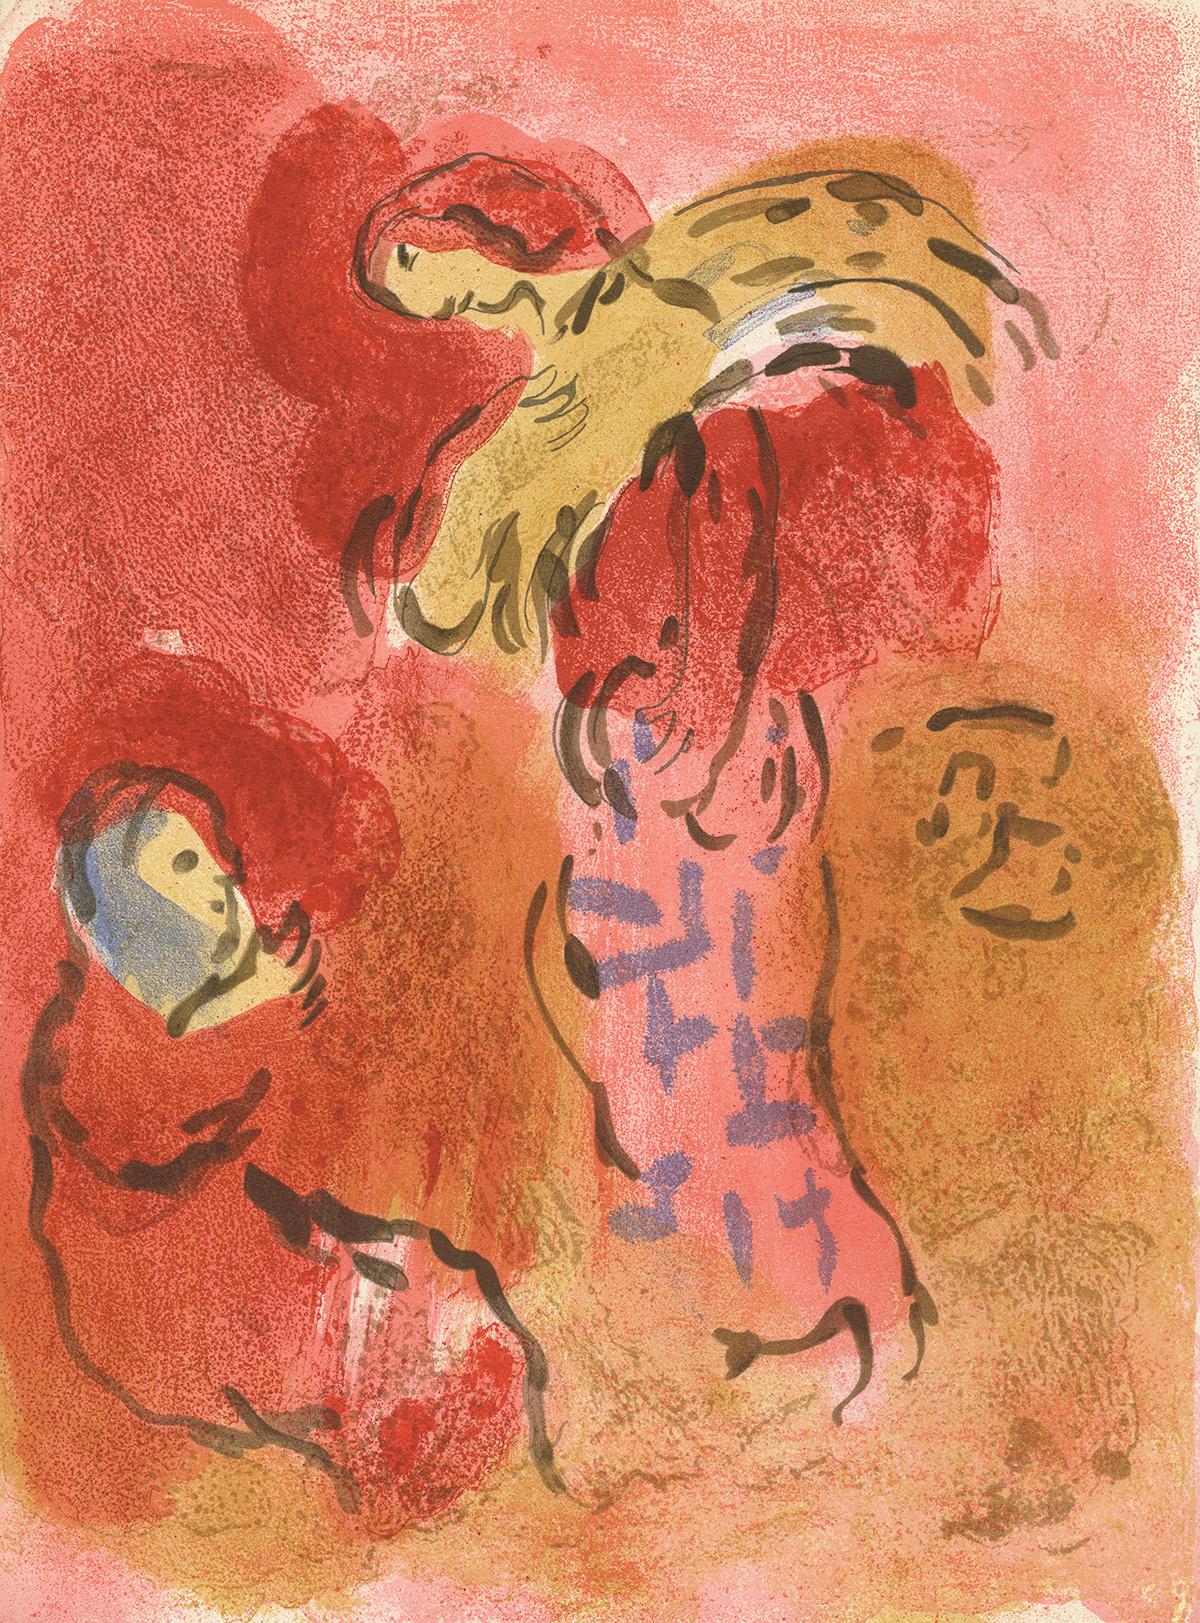 "Ruth Glaneuse (Ruth Gleaning), M 246/269" ist eine Originallithographie von Marc Chagall. Diese originale Farblithographie wurde von VERVE für das Buch "Dessins pour La Bible" entworfen und gedruckt. Es ist doppelseitig und auf der Rückseite mit